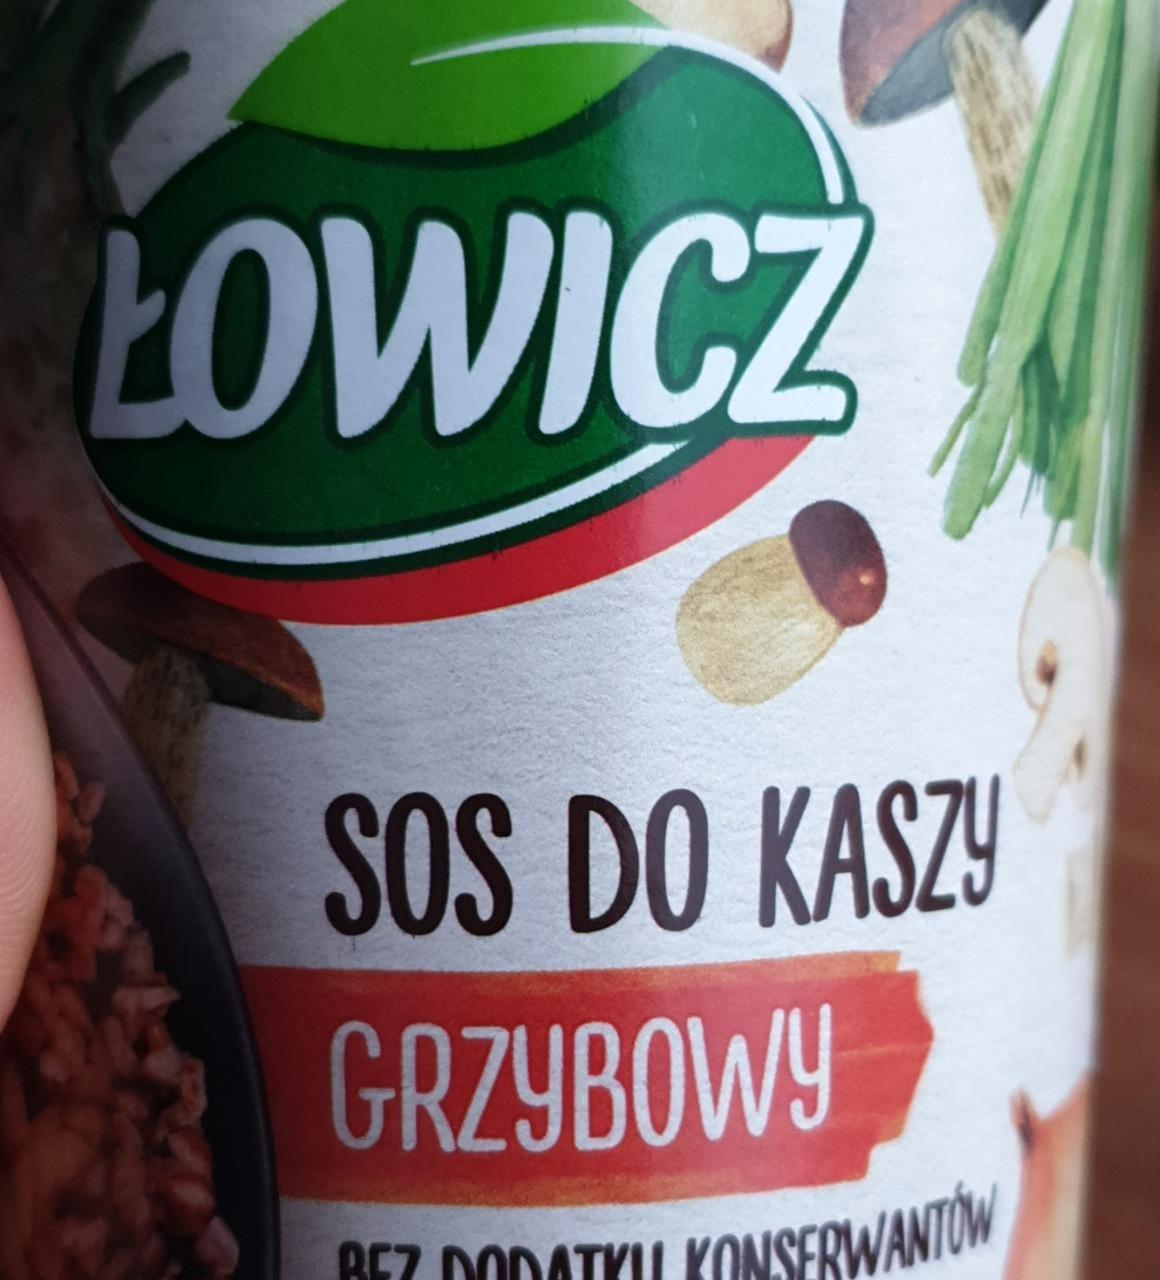 Fotografie - Sos do kaszy grzybowy Łowicz